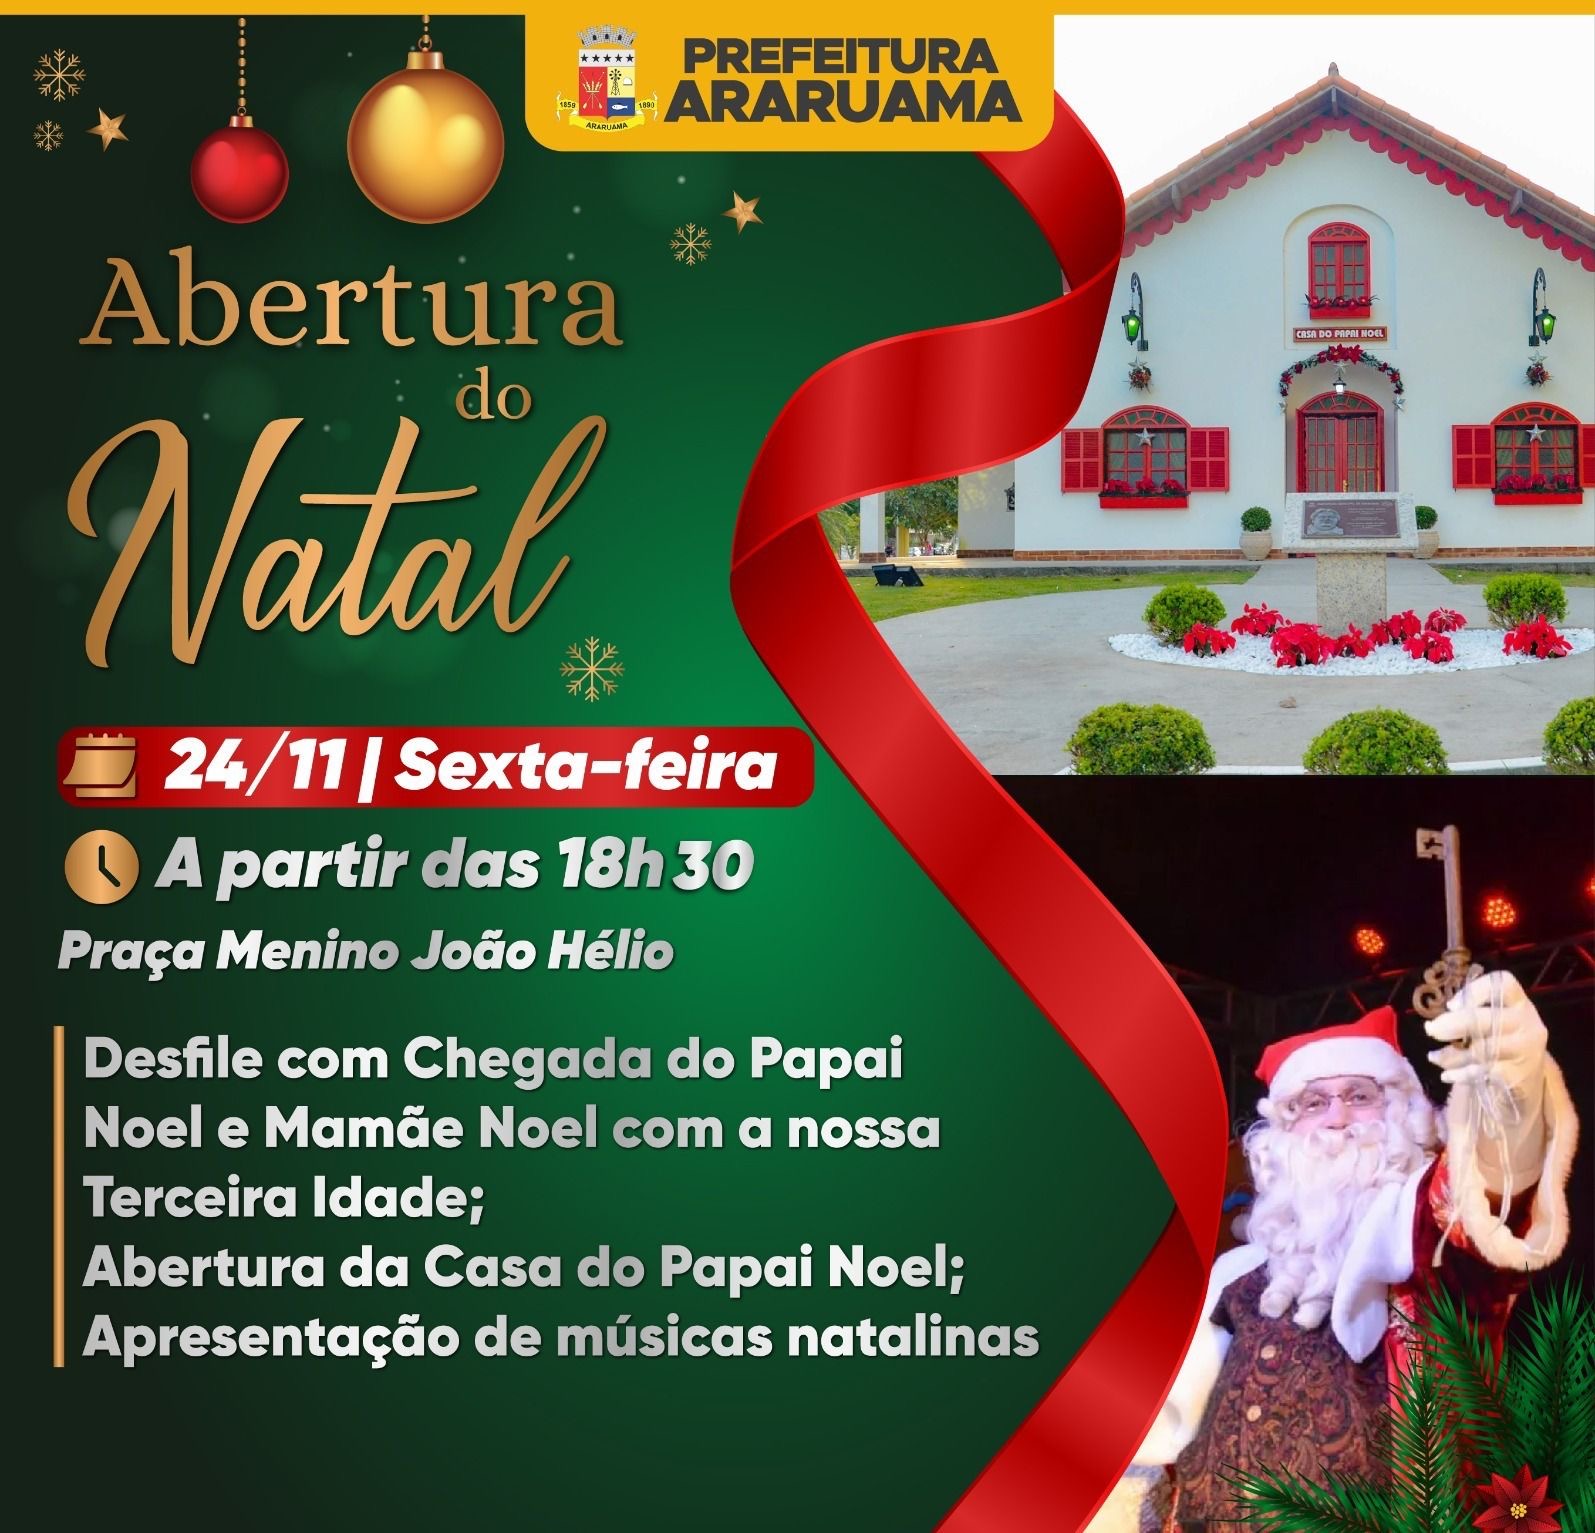 A Abertura do Natal em Araruama com a chegada do Papai Noel promete encantar e emocionar a todos